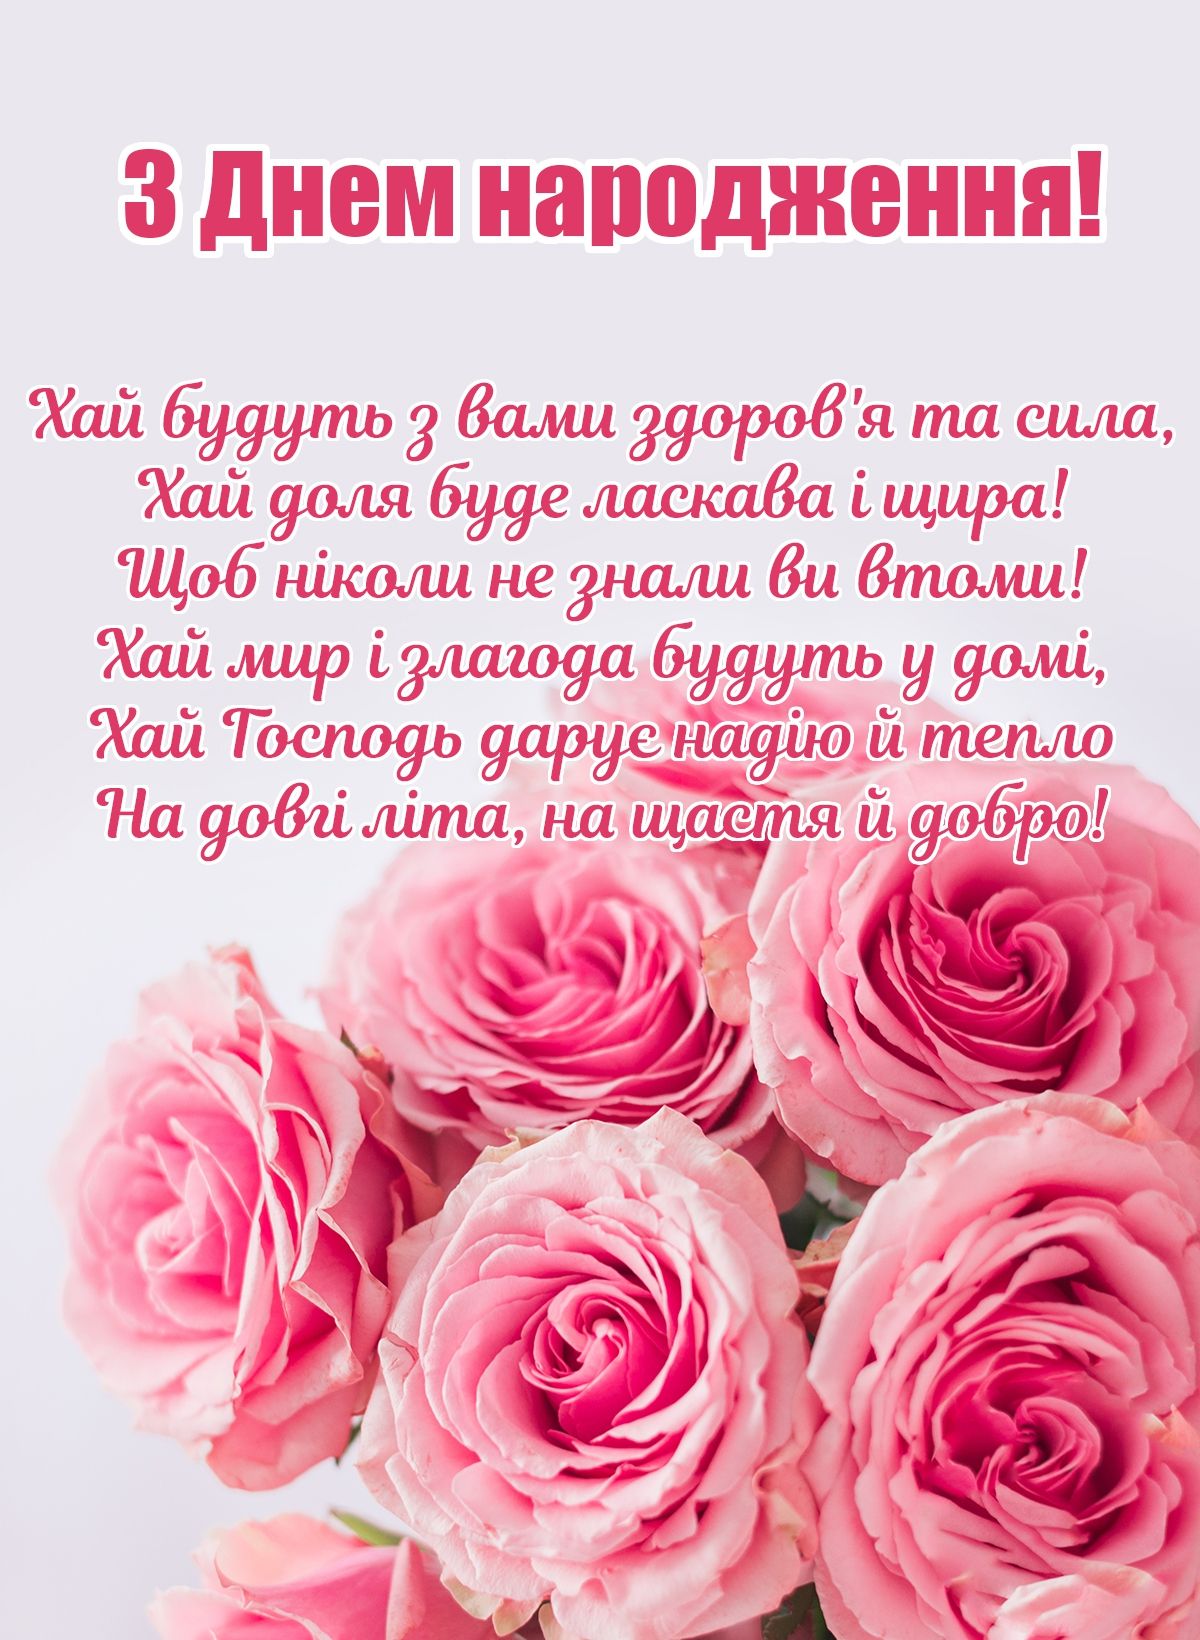 Привітання з днем народження свату, від свахи, свата, від сватів українською мовою
